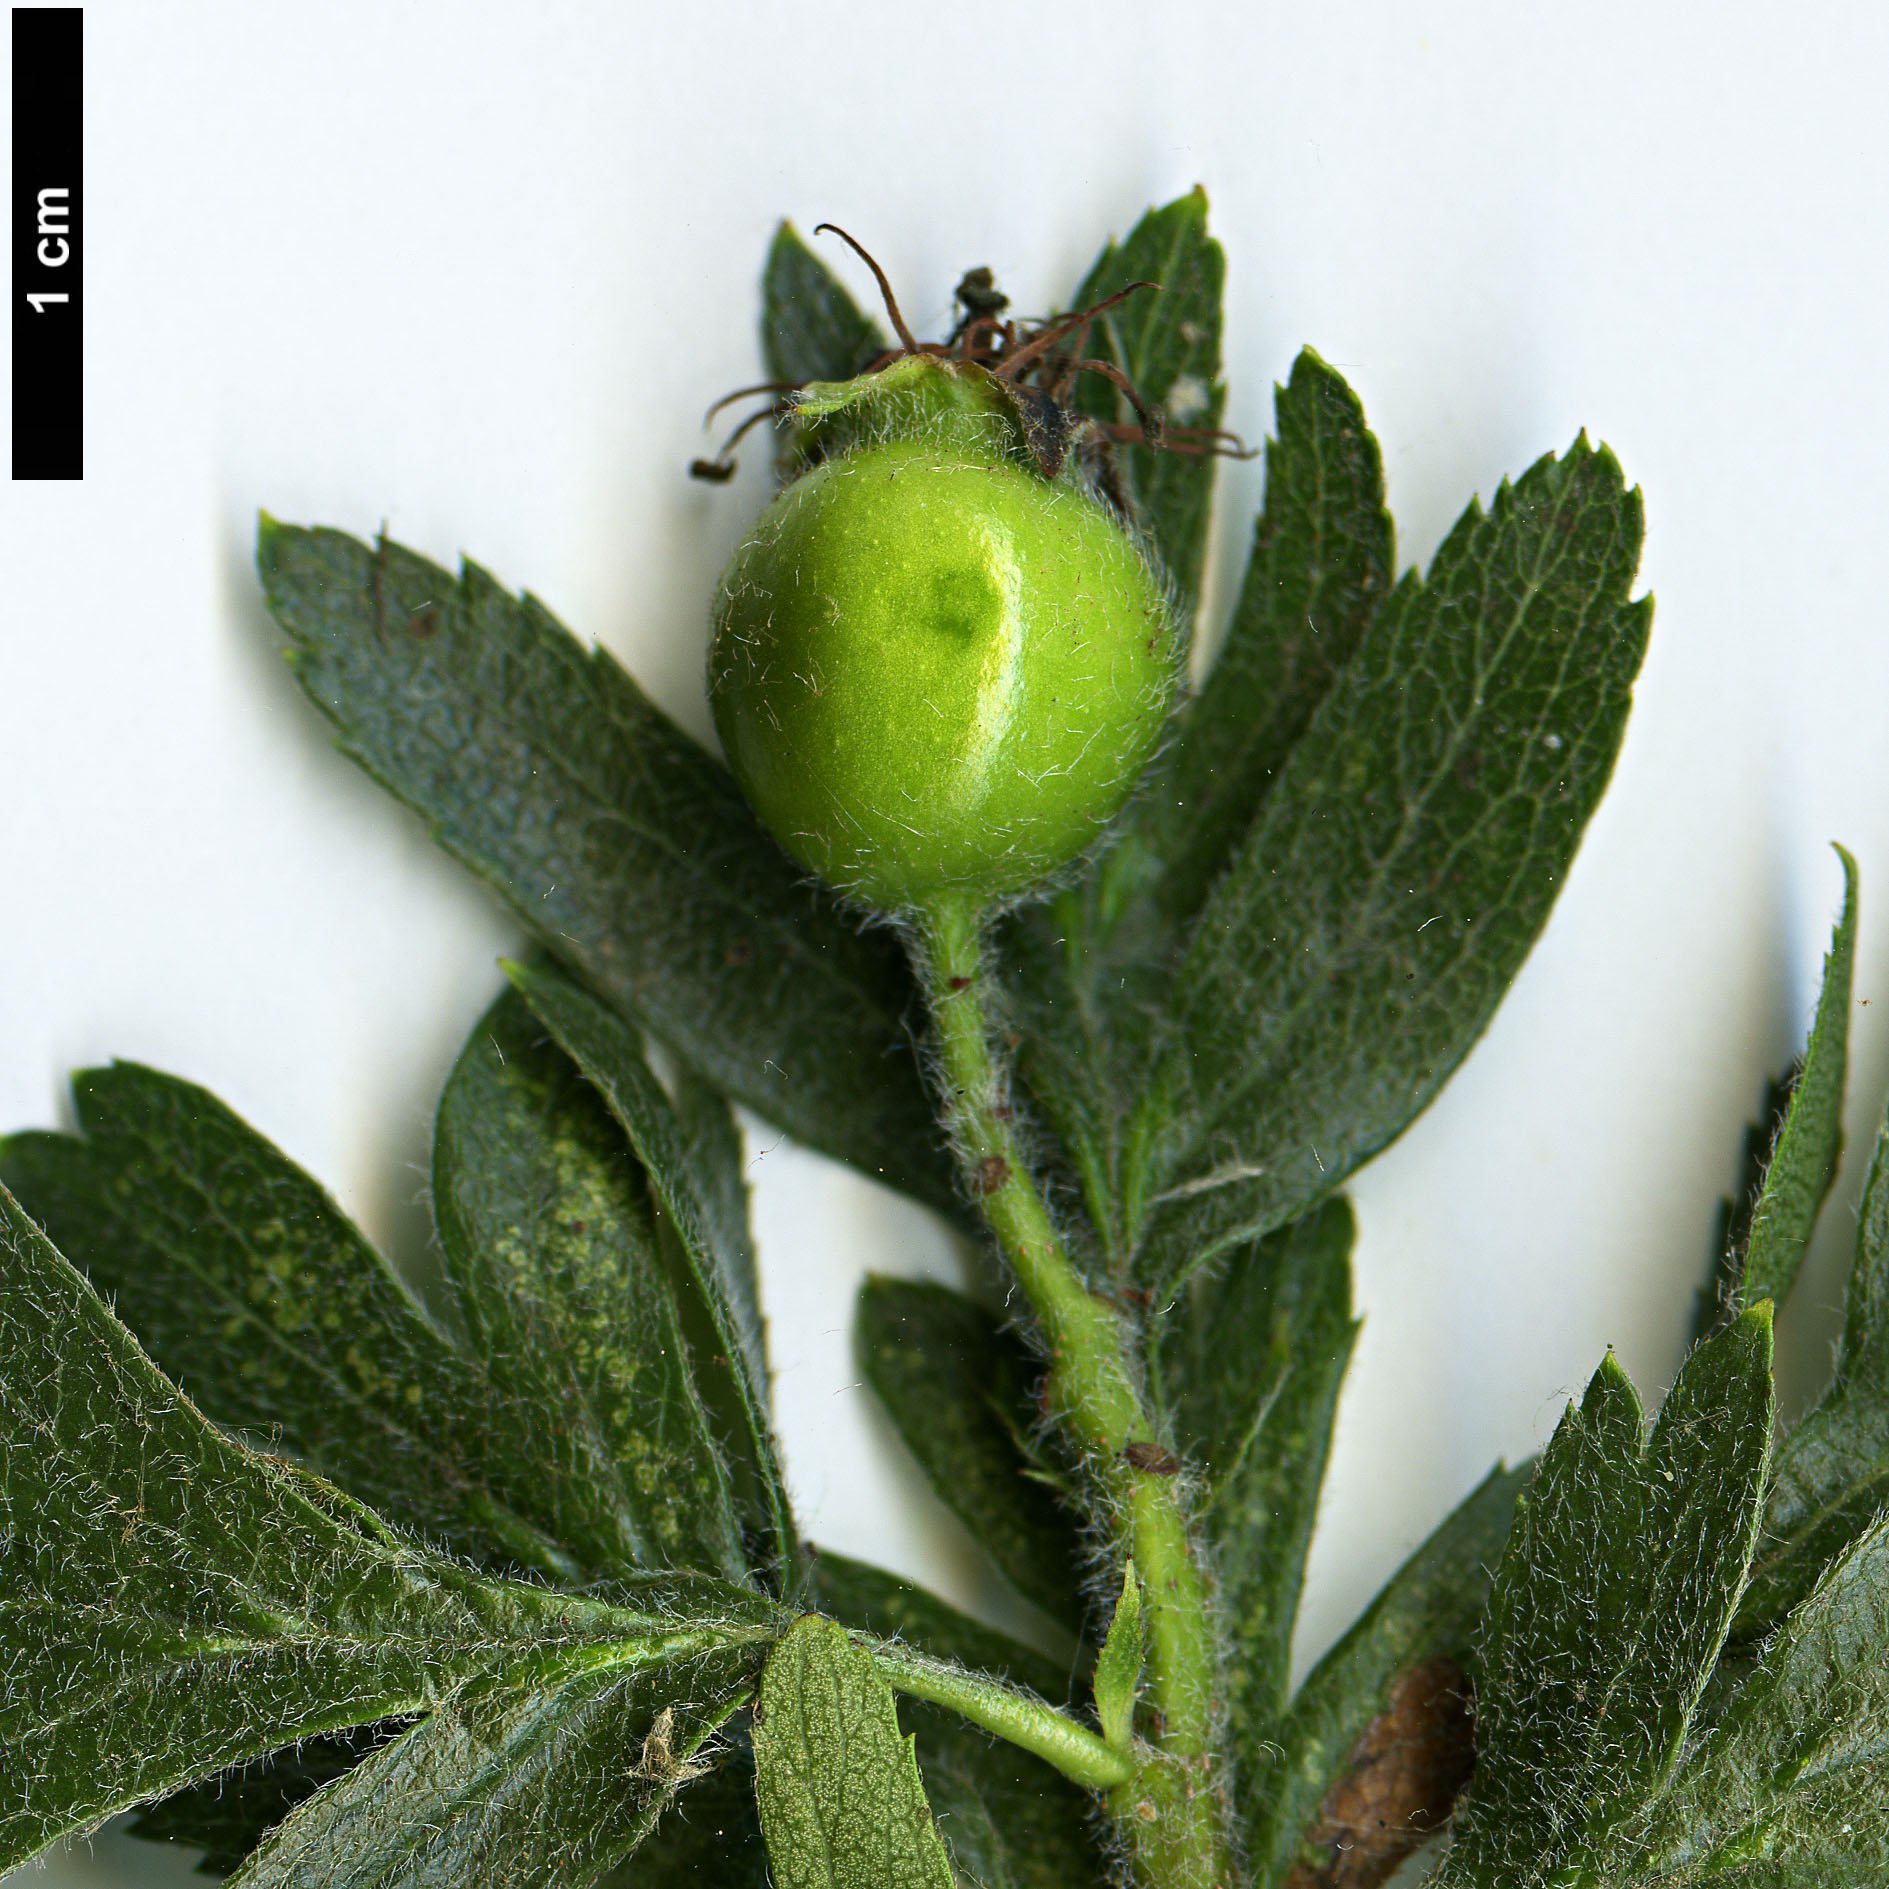 High resolution image: Family: Rosaceae - Genus: Crataegus - Taxon: orientalis